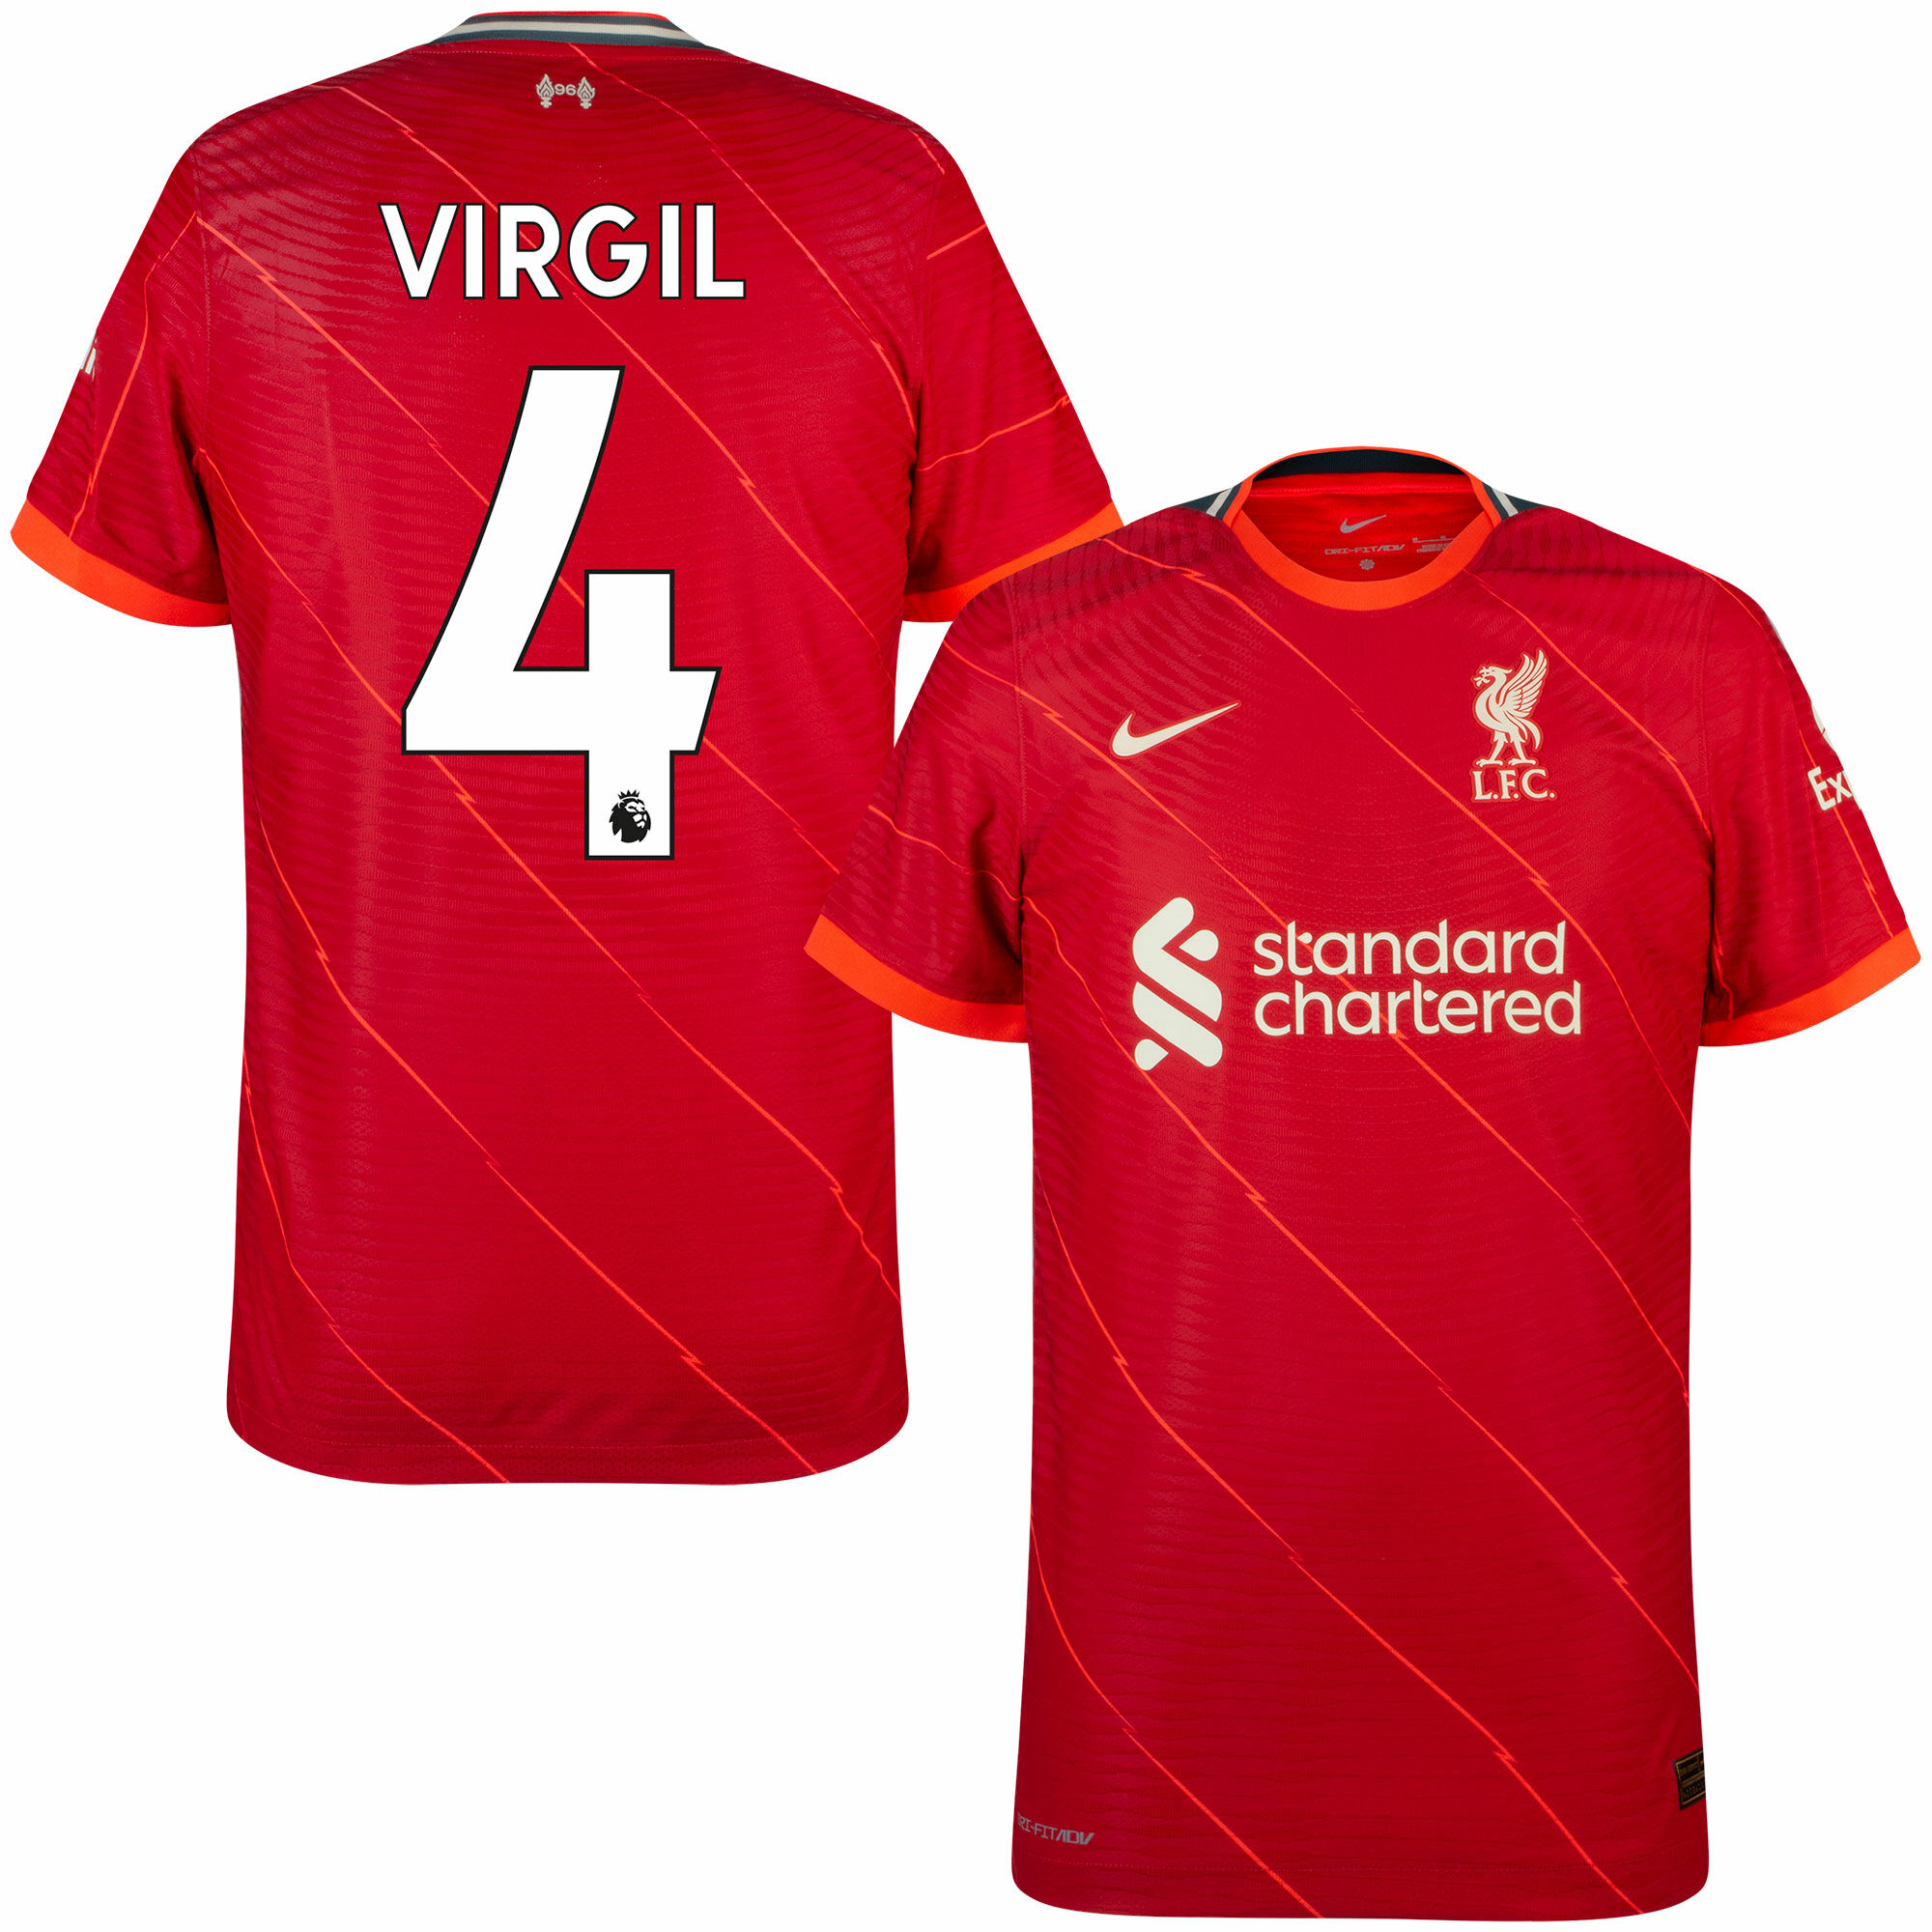 Liverpool - Dres fotbalový "Match" - sezóna 2021/22, Dri-FIT ADV, Virgil van Dijk, domácí, červený, číslo 4